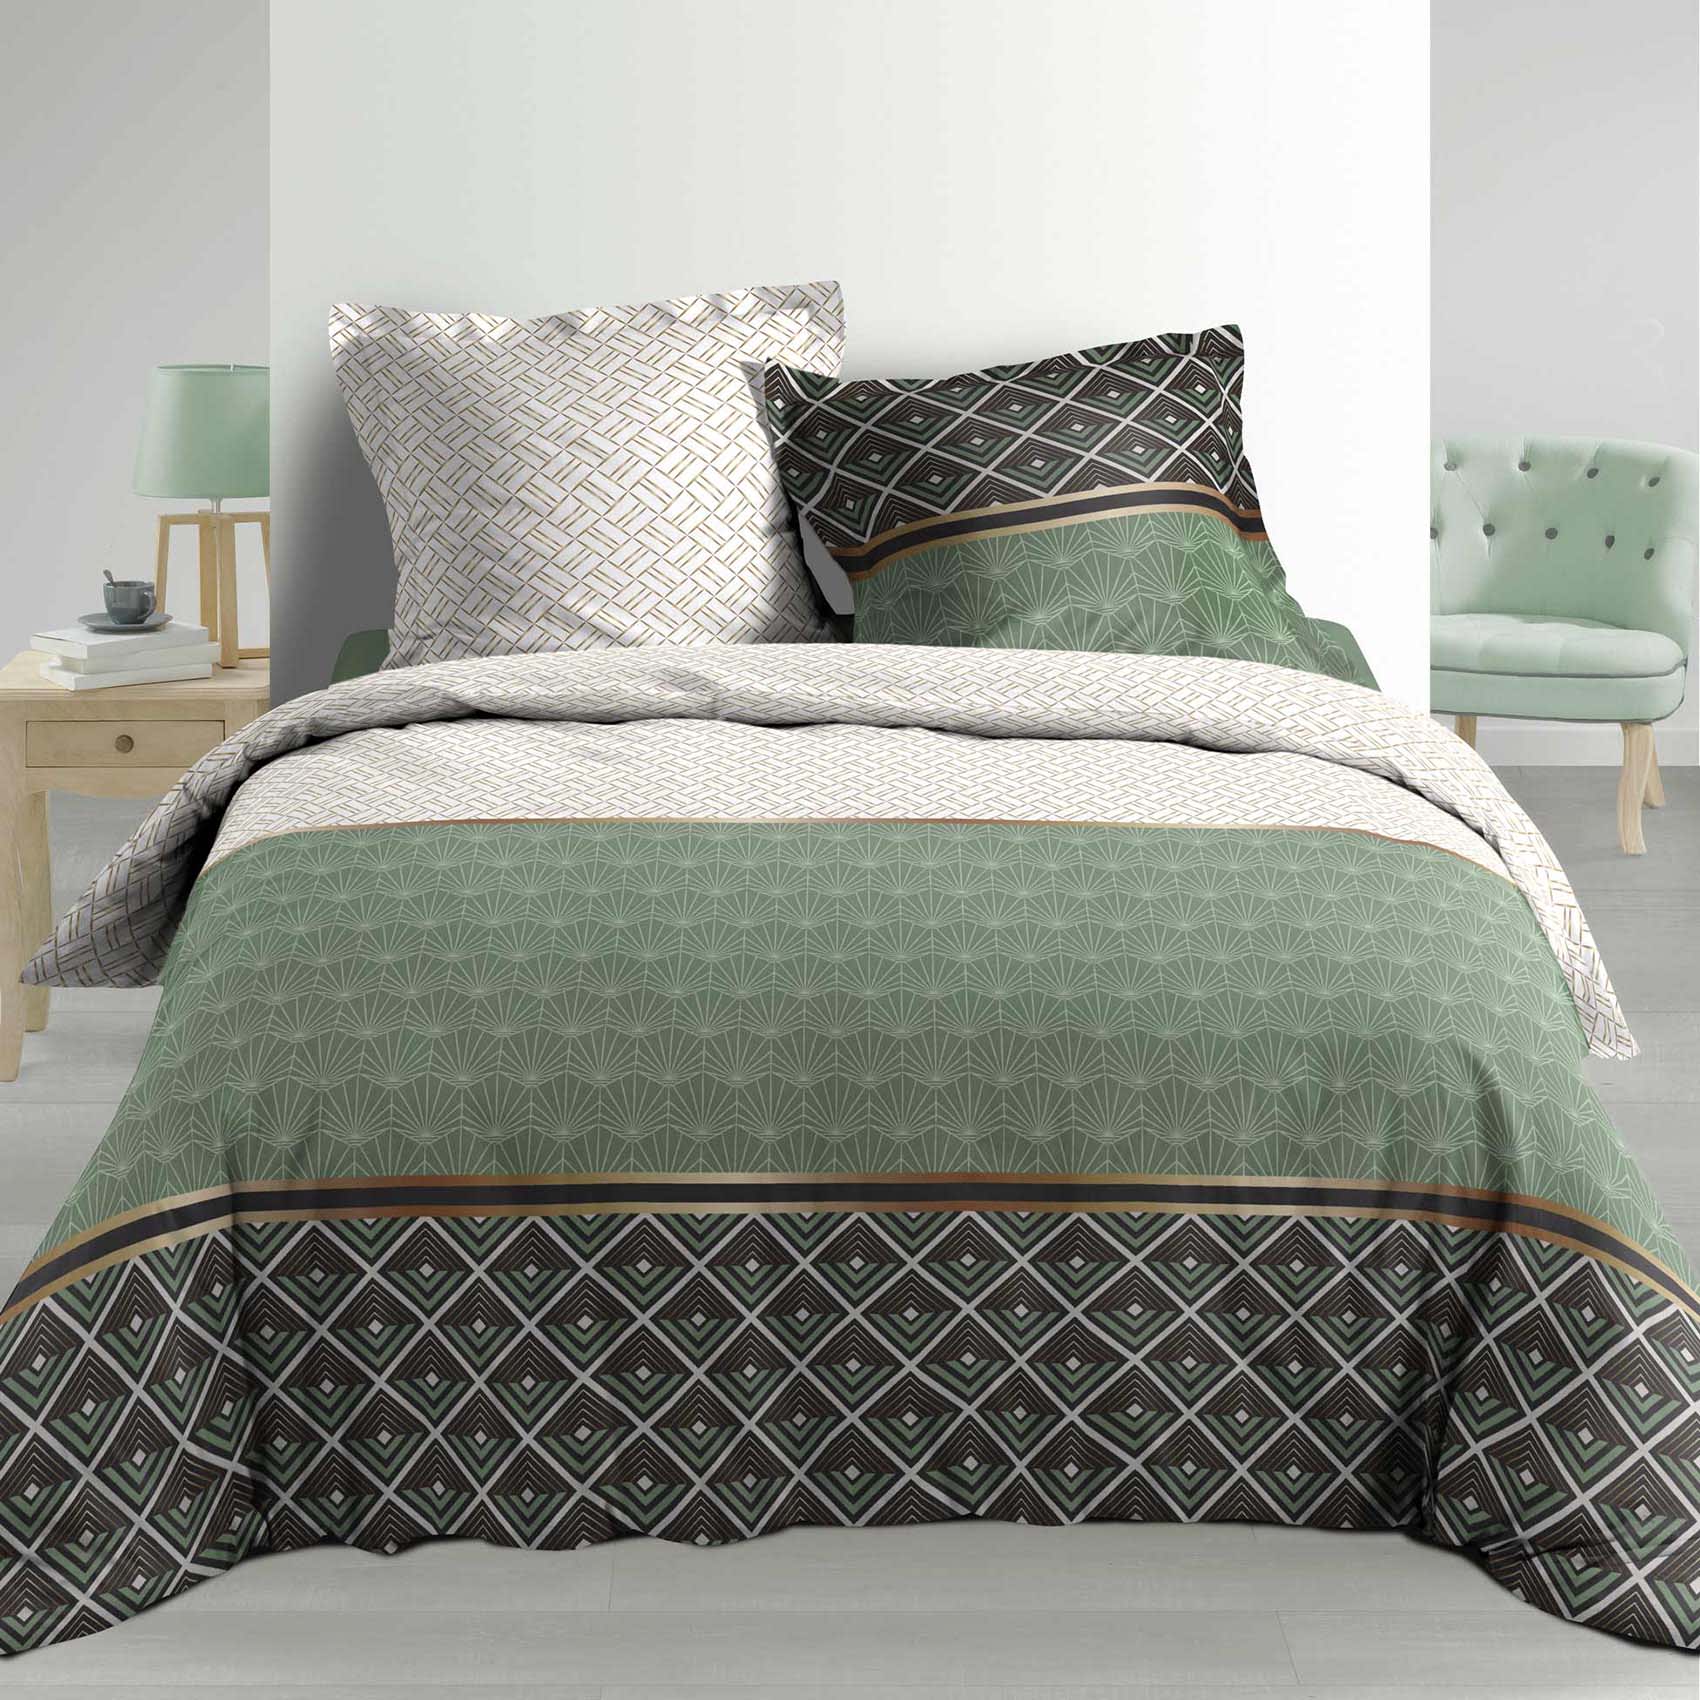 Parure de lit en coton vert 200x220 avec parure de fleurs 4 PIECES - Linge  de lit 